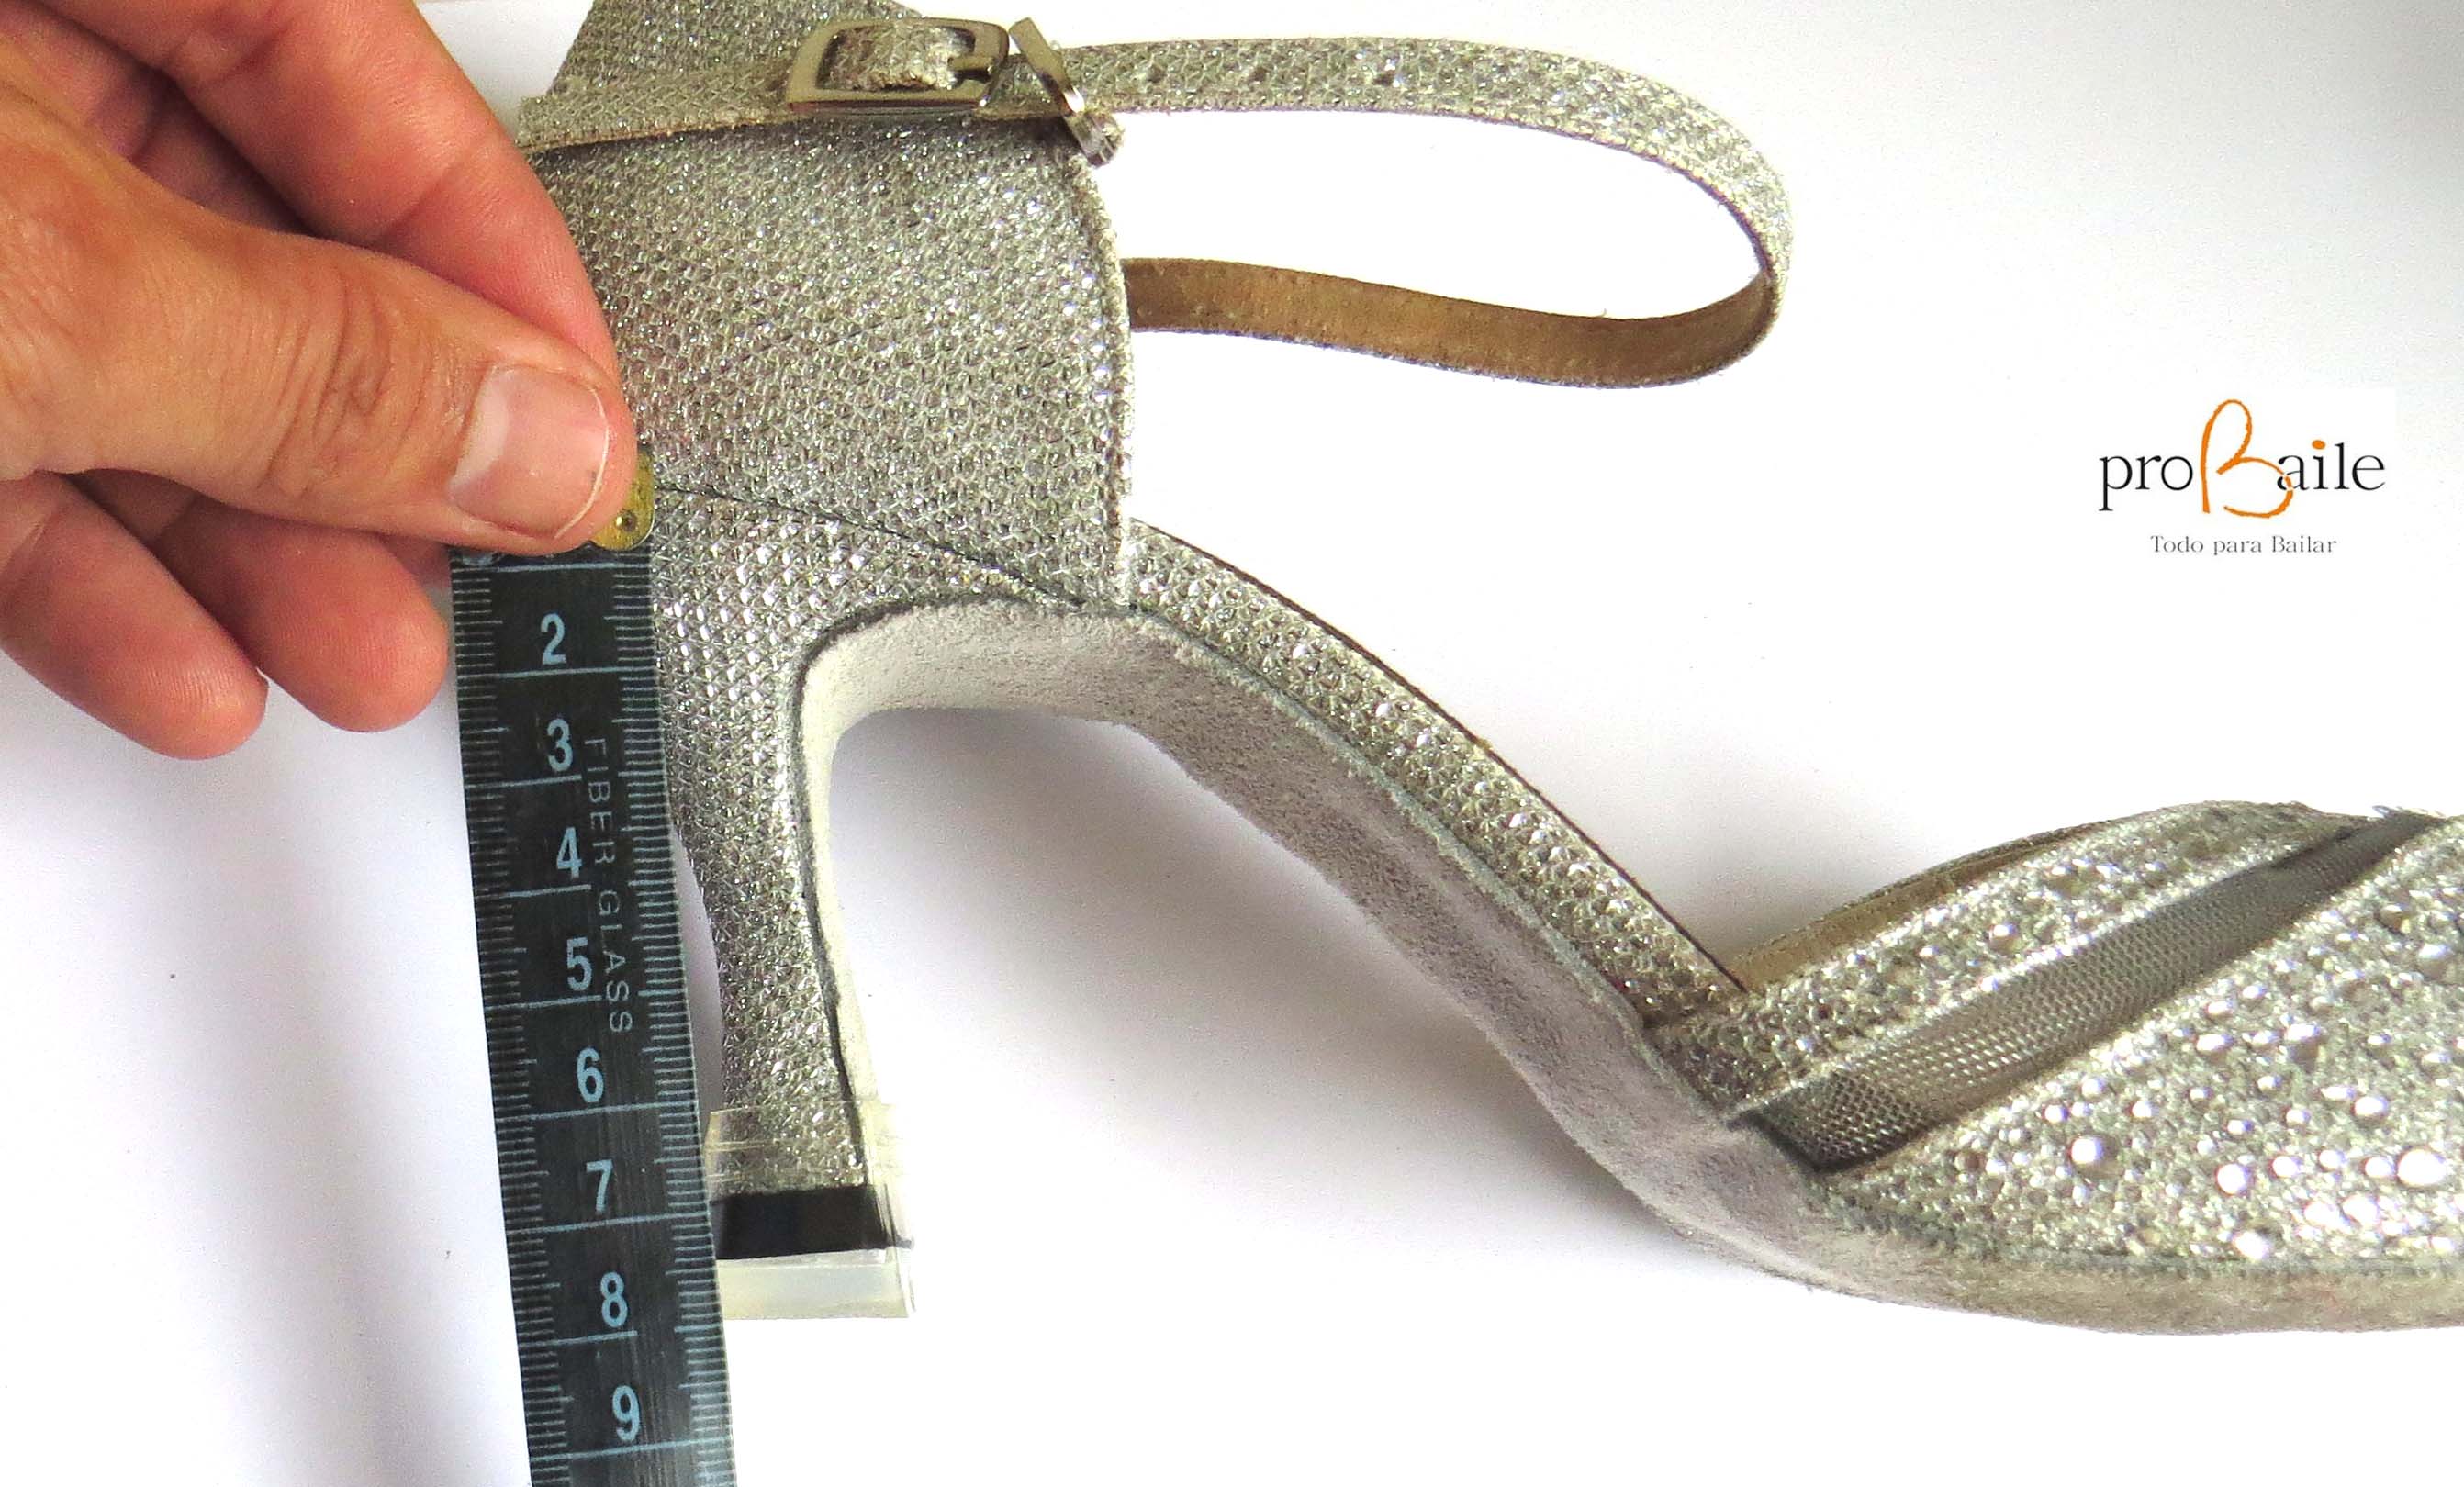 Glosario Hospitalidad Rítmico Como medir el tacón de tus zapatos de baile. Altura tacón zapatos.